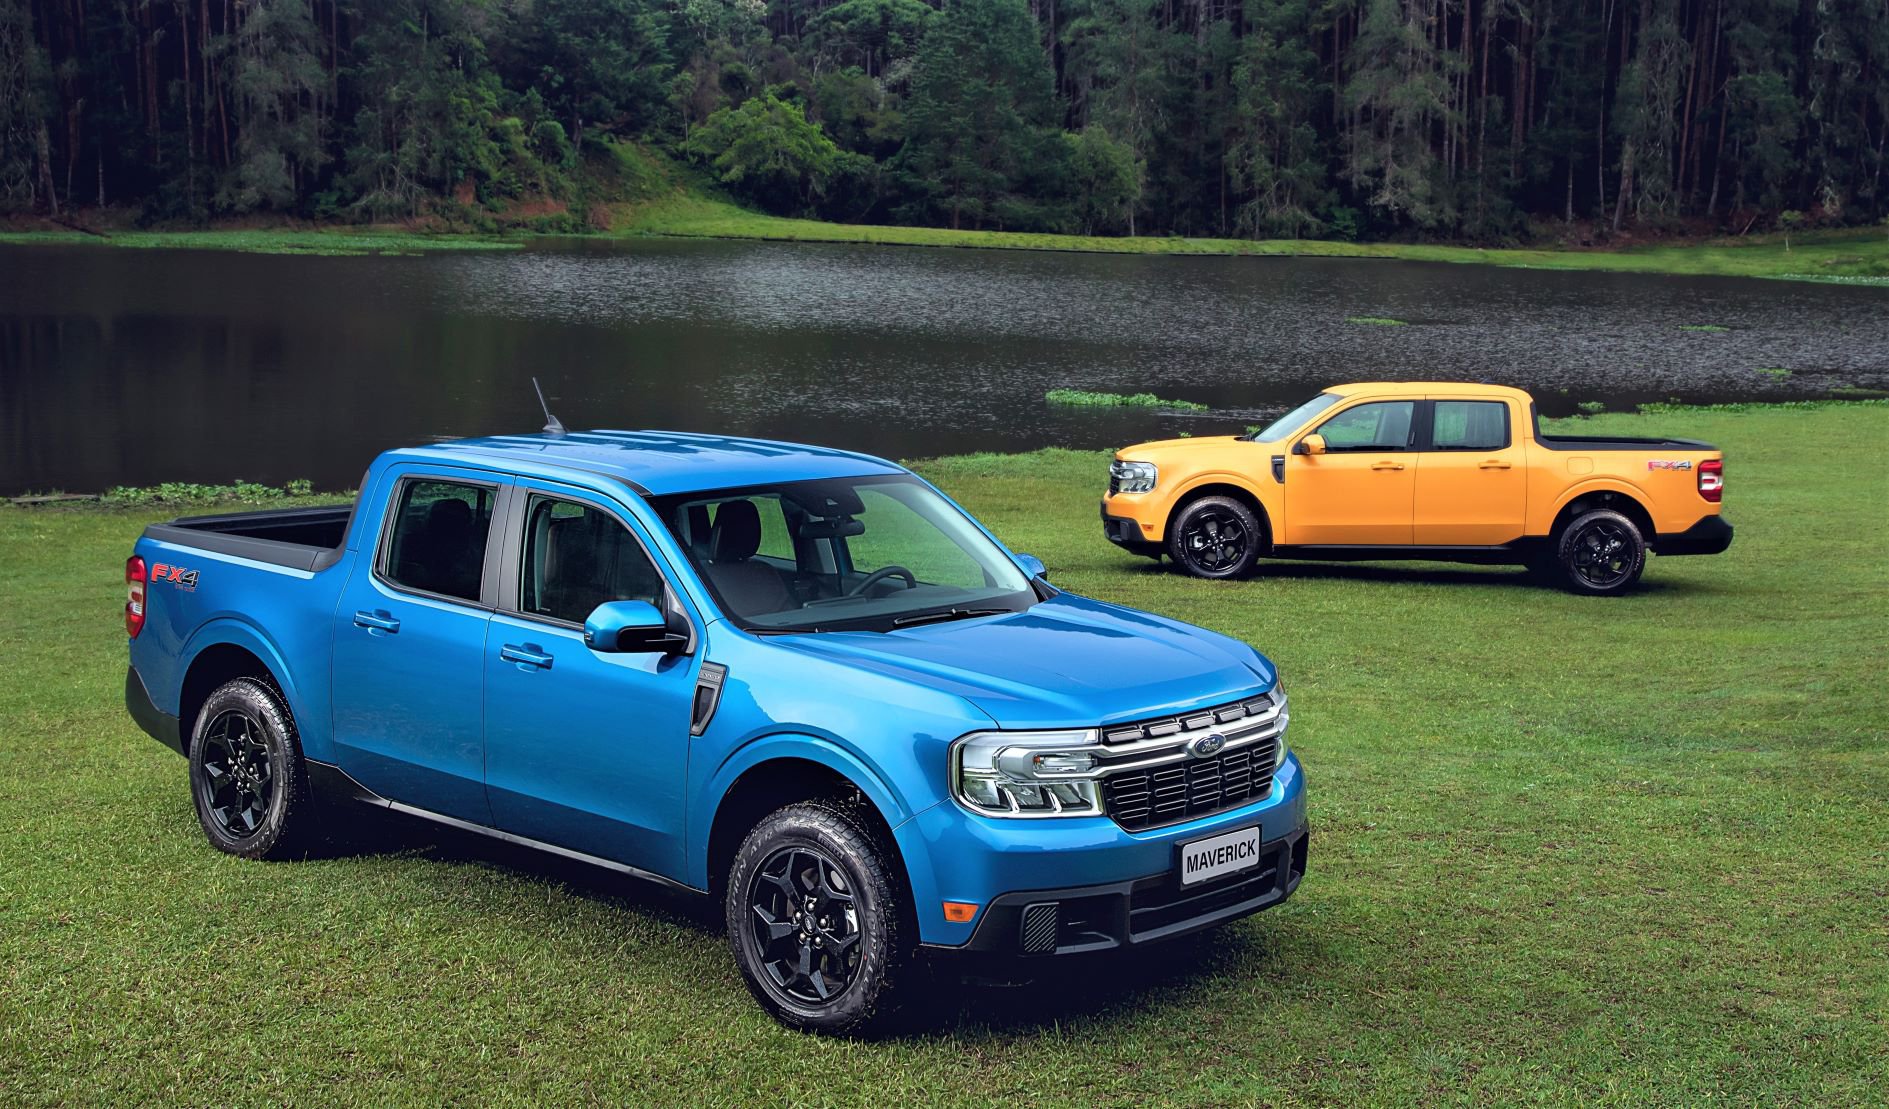 Ford apresenta picape Maverick dividida entre Fiat Toro e SUVs